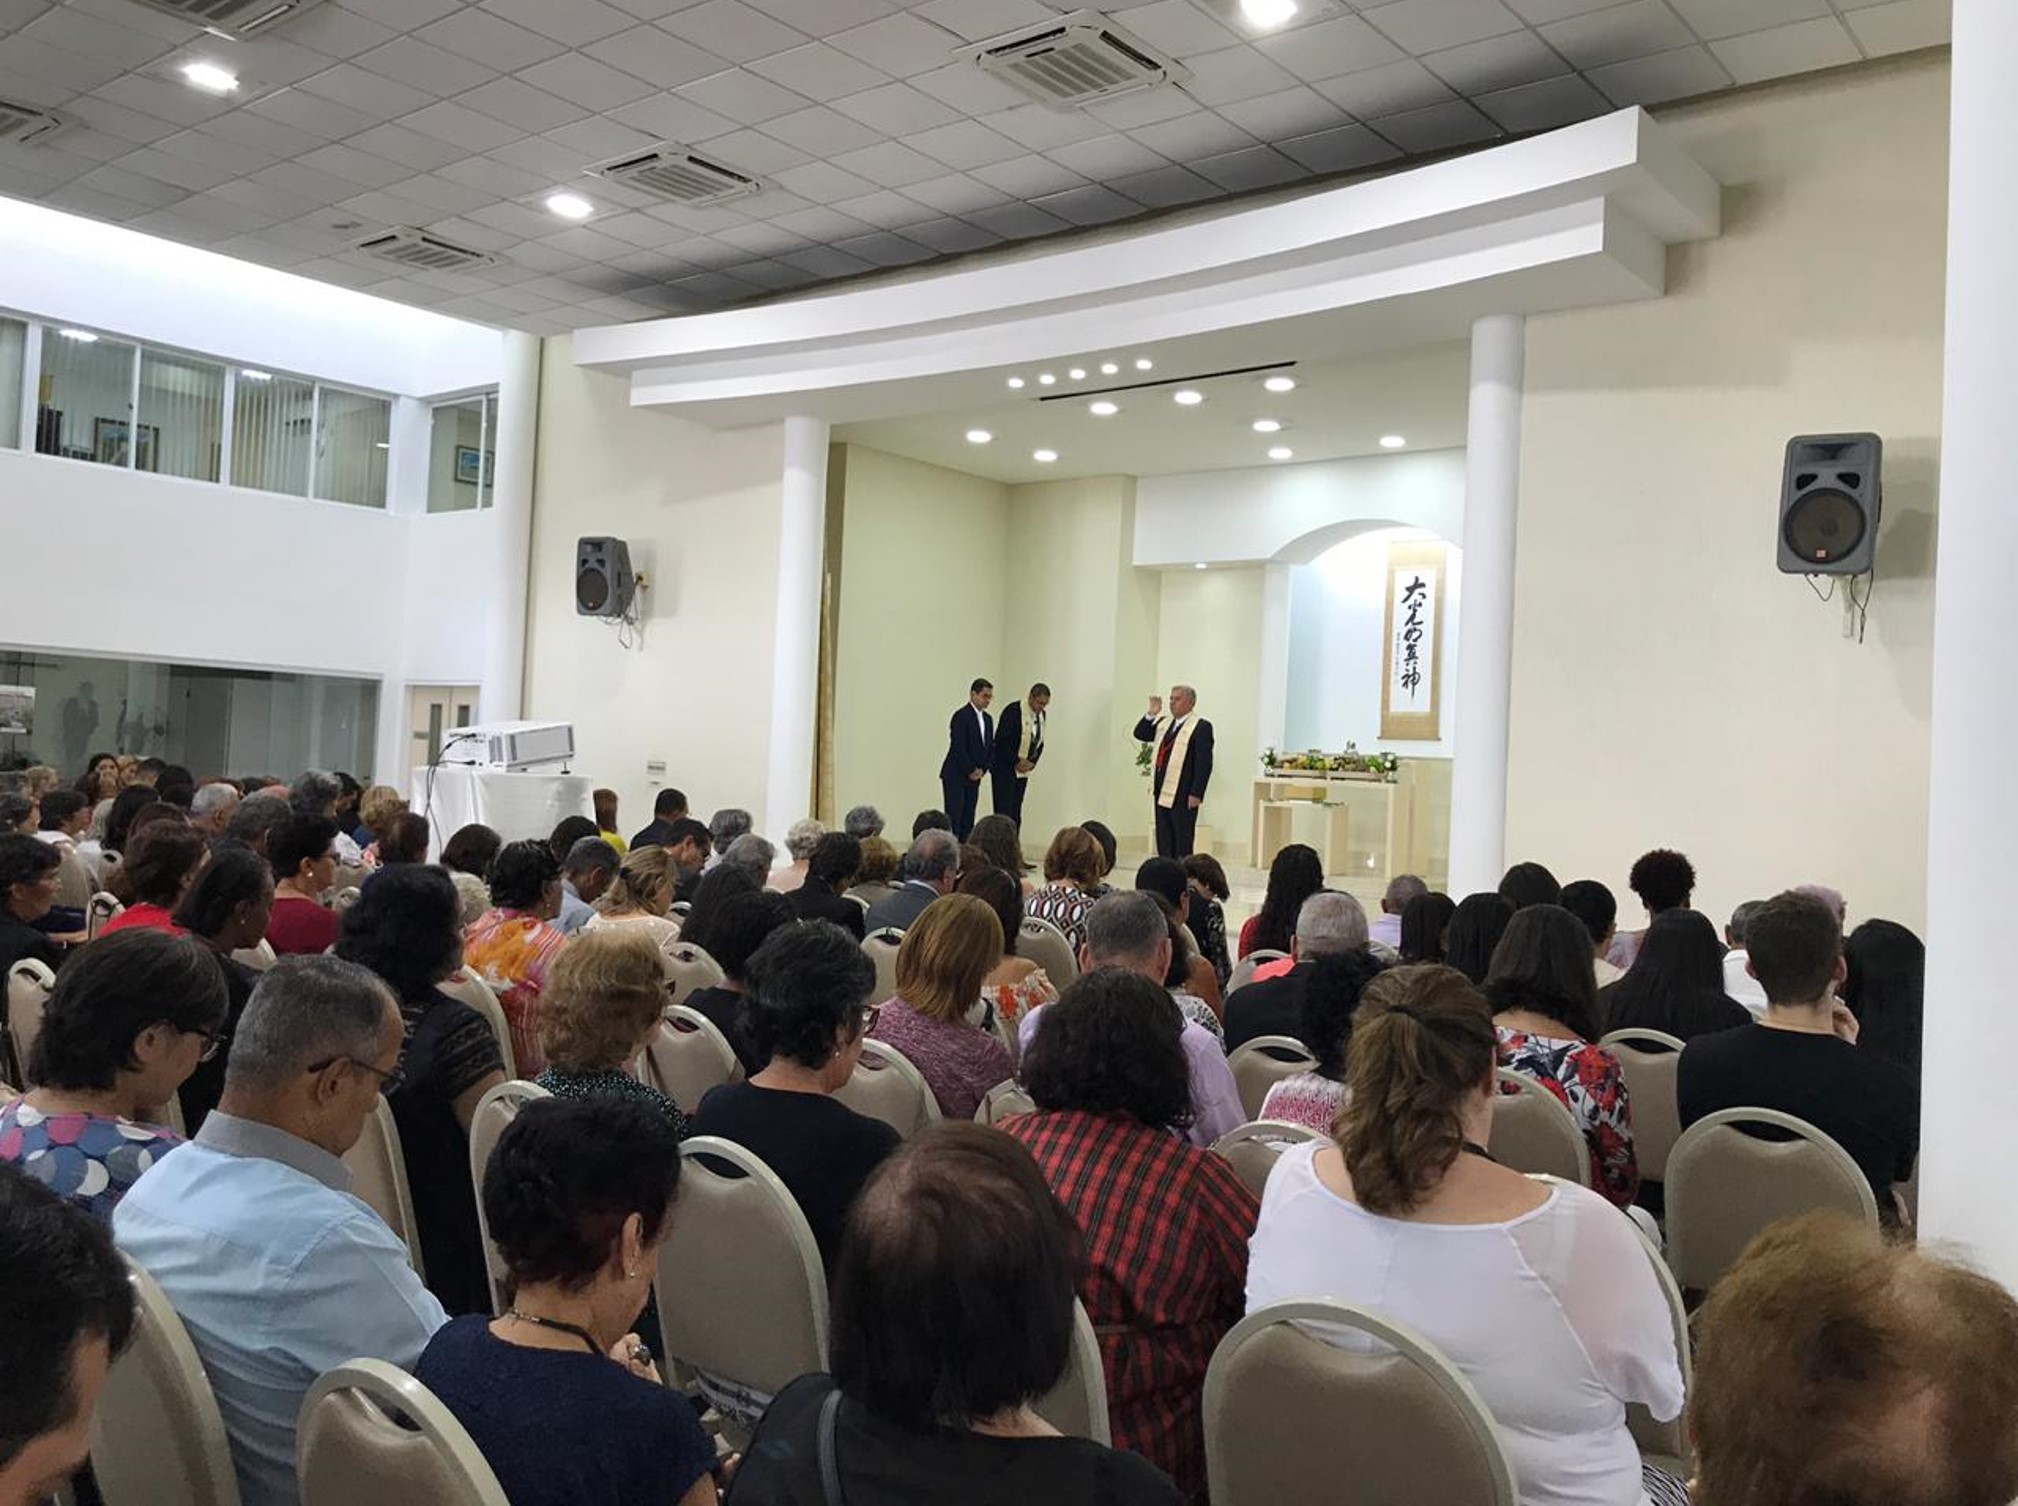 Igreja Recife (PE) realiza culto mensal com a presença do diretor regional